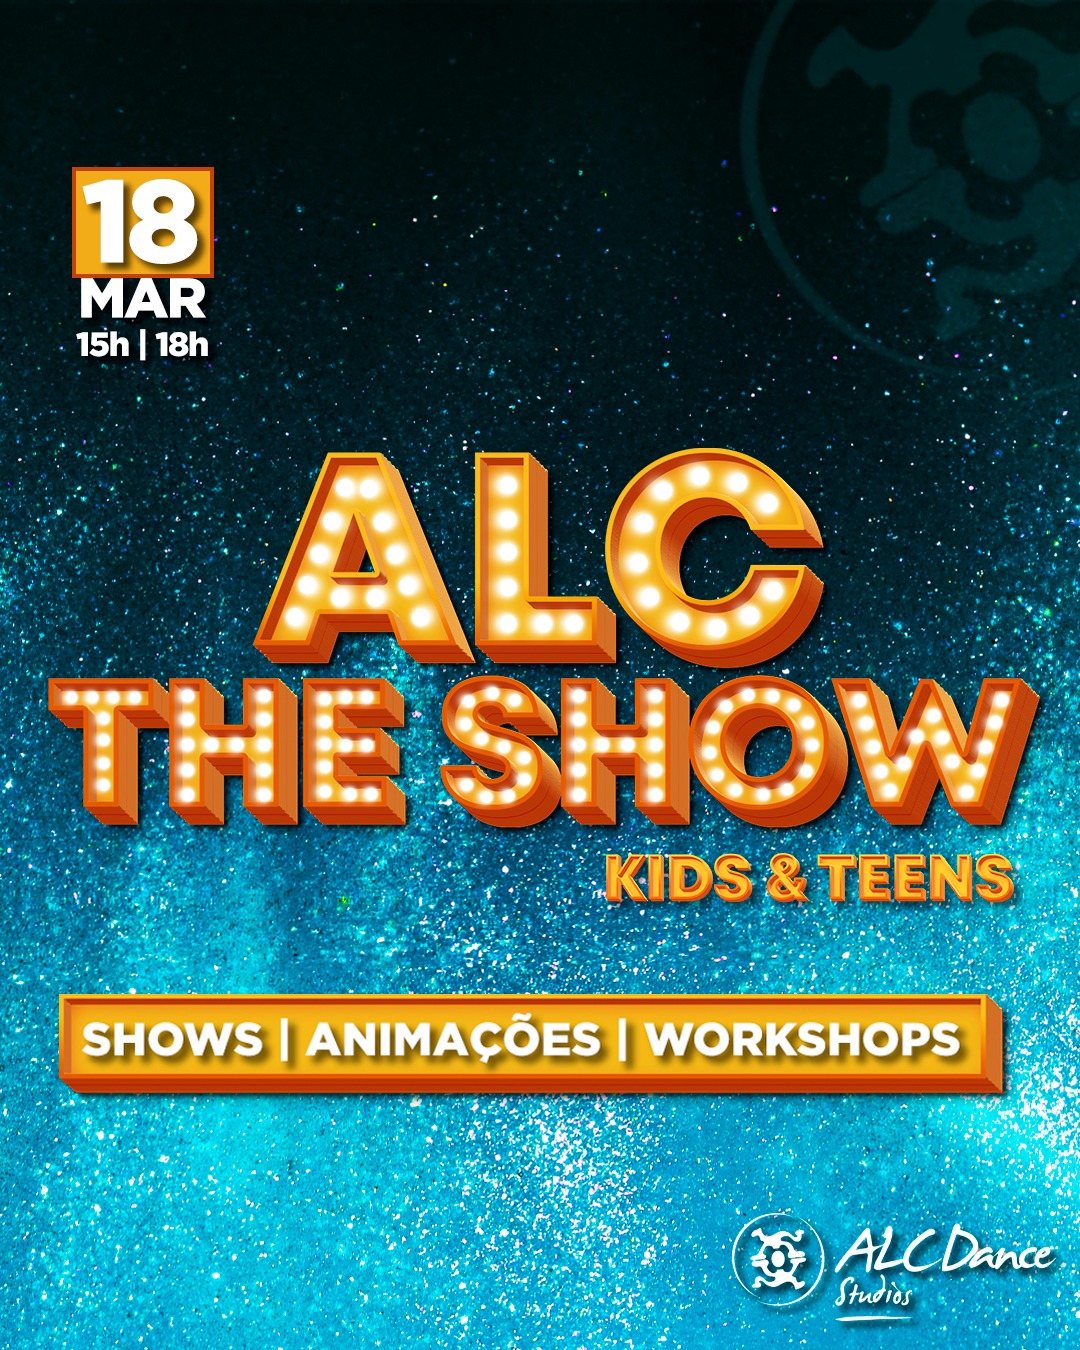 Uma festa pensada e organizada especialmente para a camada jovem da ALC Dance Studios